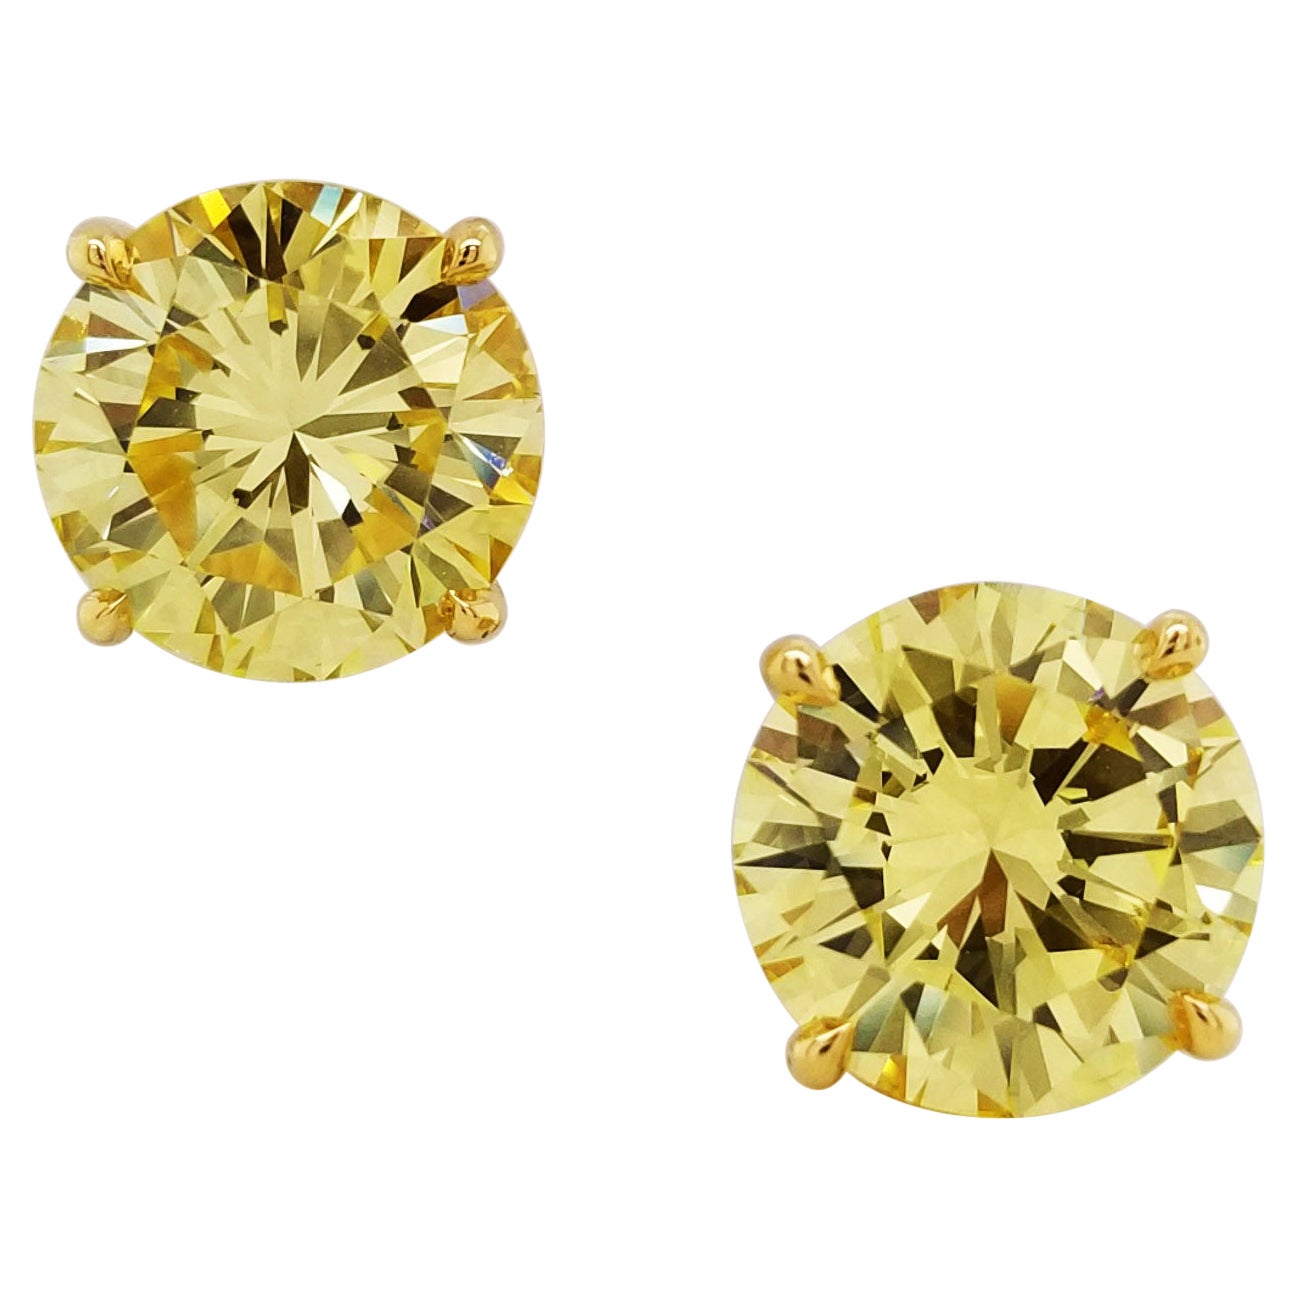 SCARSELLI Stud Gold Earrings 3 Carat Fancy Intense Yellow Diamond Each 